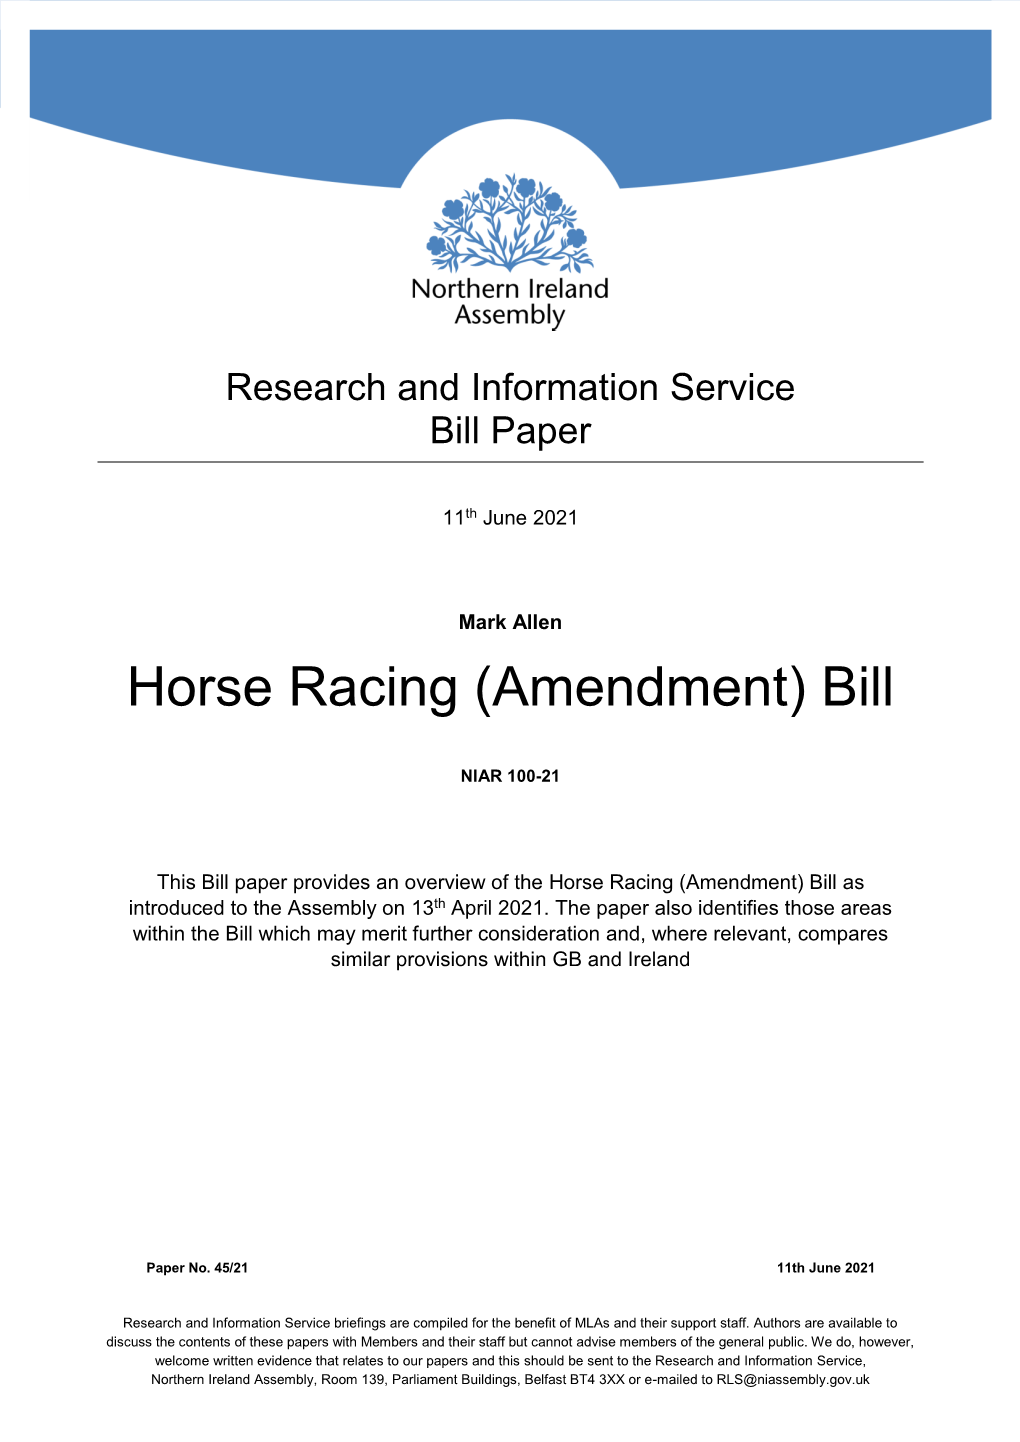 Horse Racing (Amendment) Bill